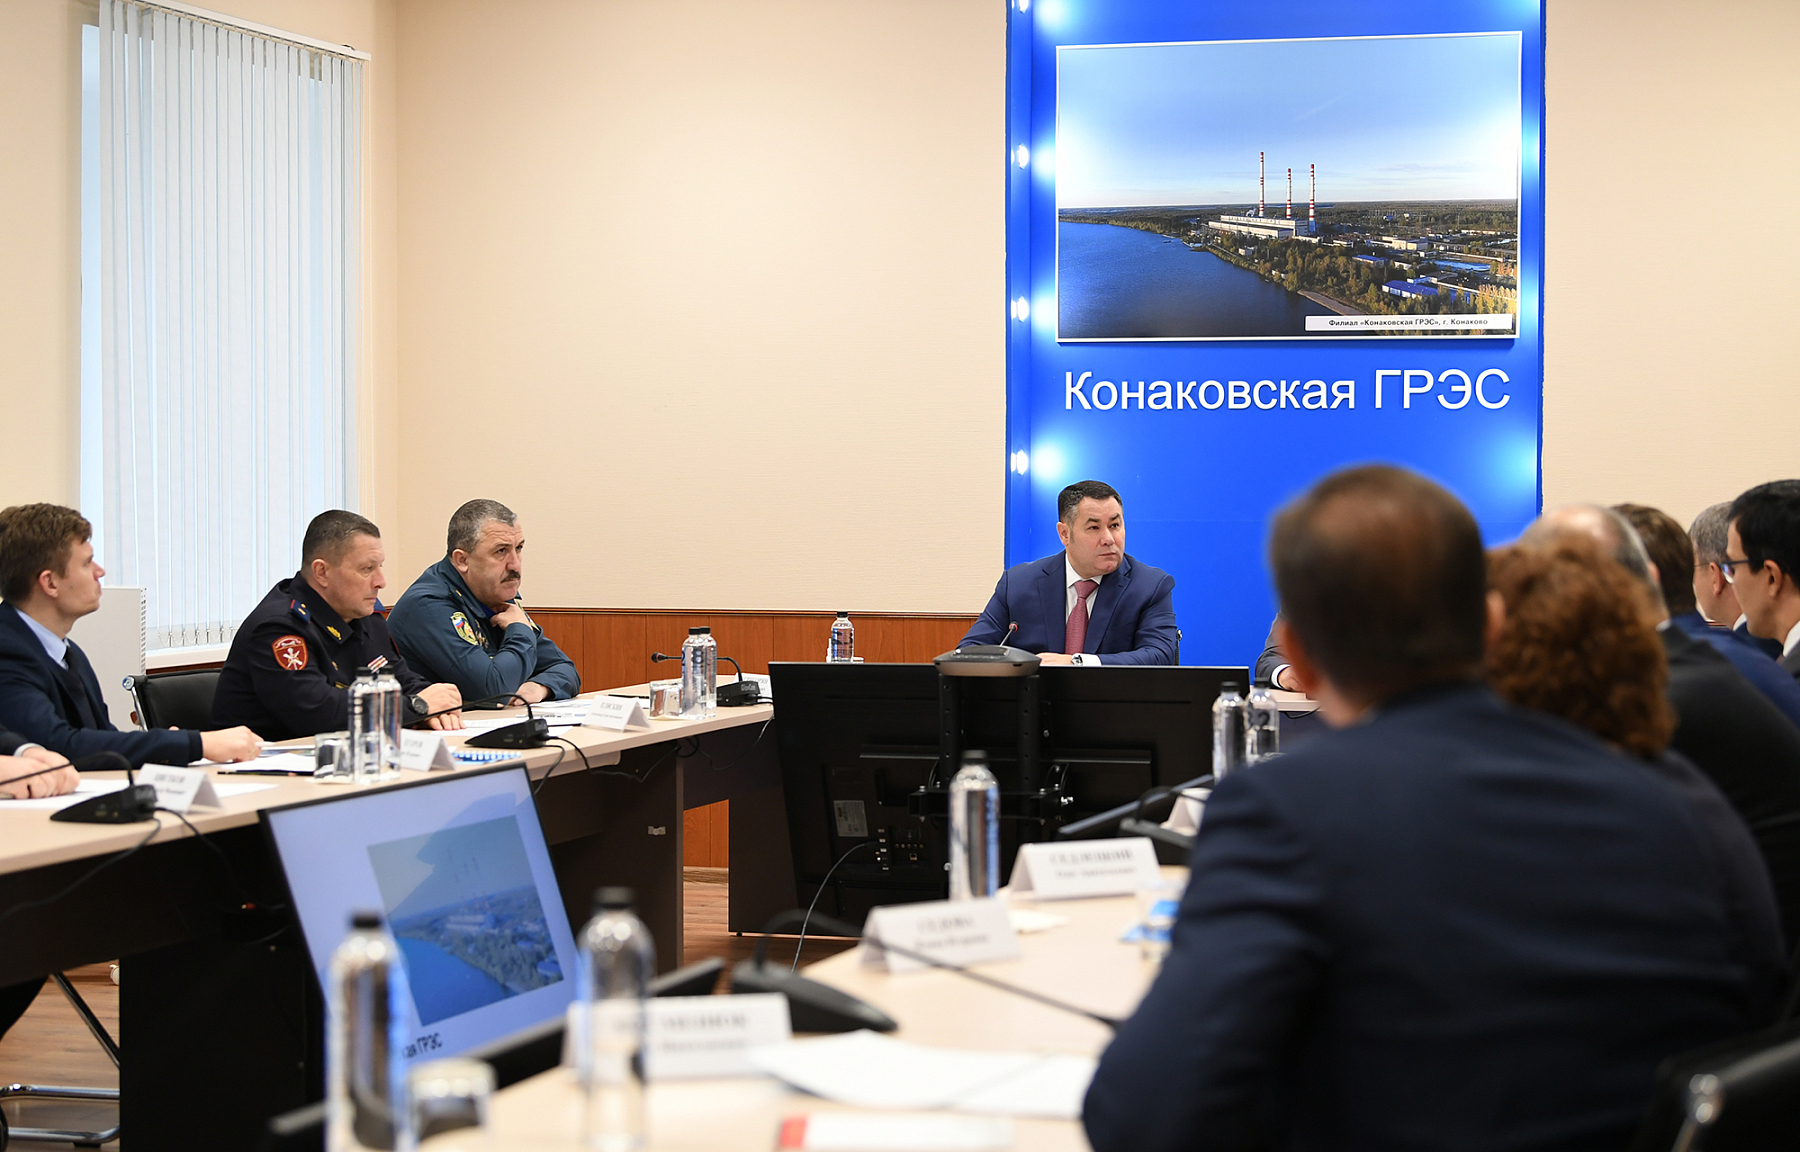 Игорь Руденя посетил Конаковскую ГРЭС и обсудил с представителями ПАО «ЛУКОЙЛ» перспективы развития предприятия